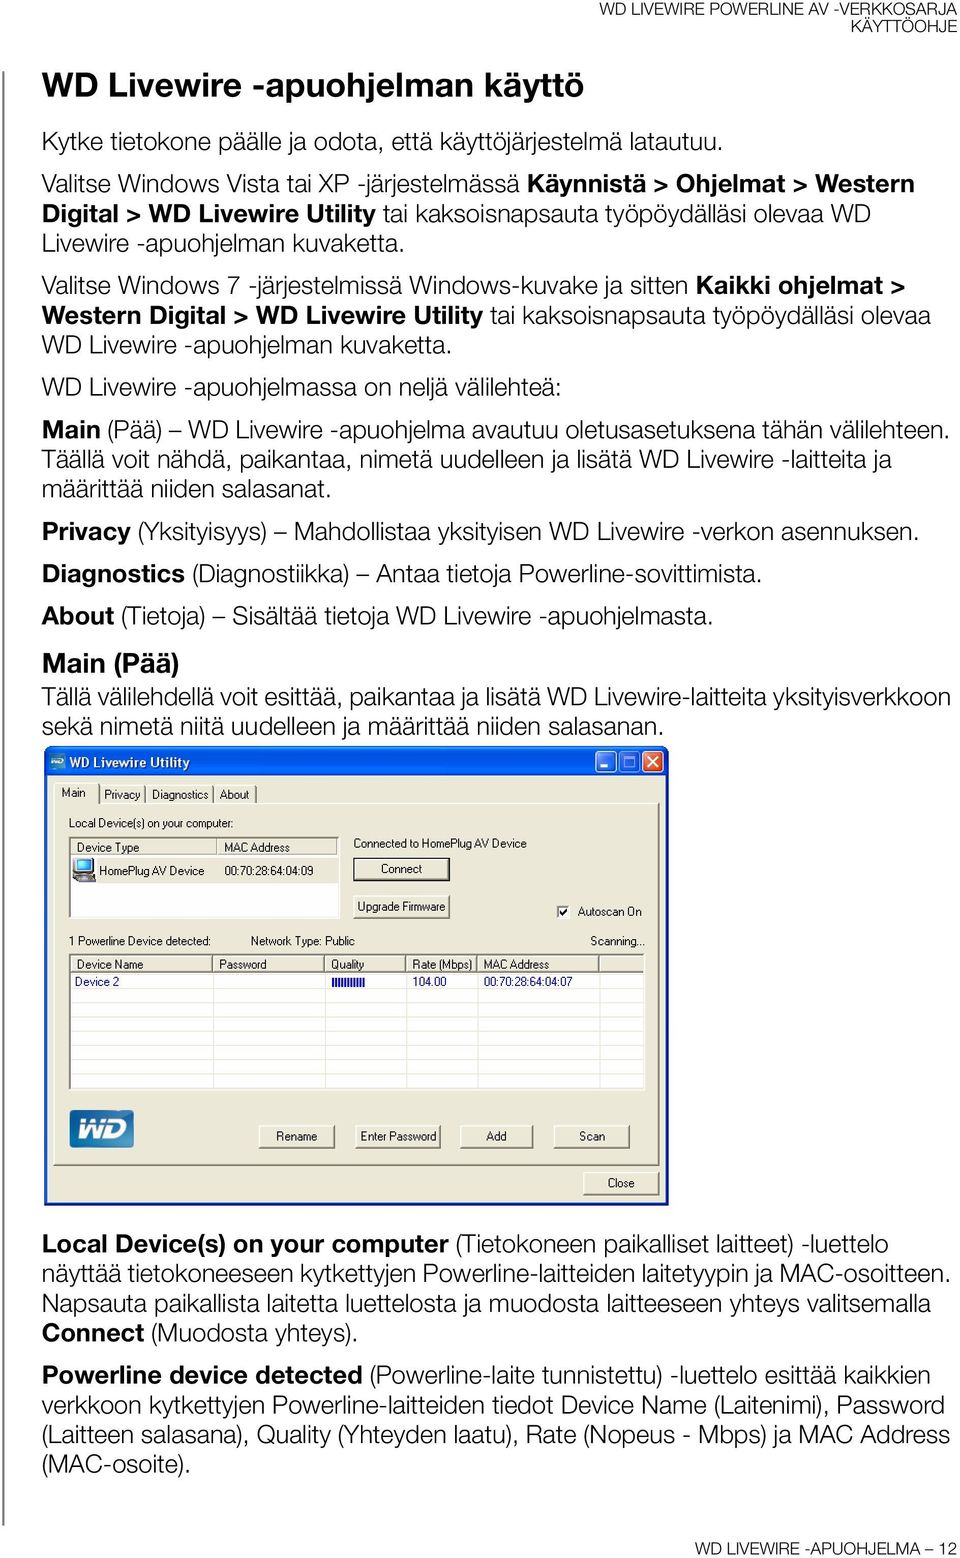 Valitse Windows 7 -järjestelmissä Windows-kuvake ja sitten Kaikki ohjelmat > Western Digital > WD Livewire Utility tai kaksoisnapsauta työpöydälläsi olevaa WD Livewire -apuohjelman kuvaketta.